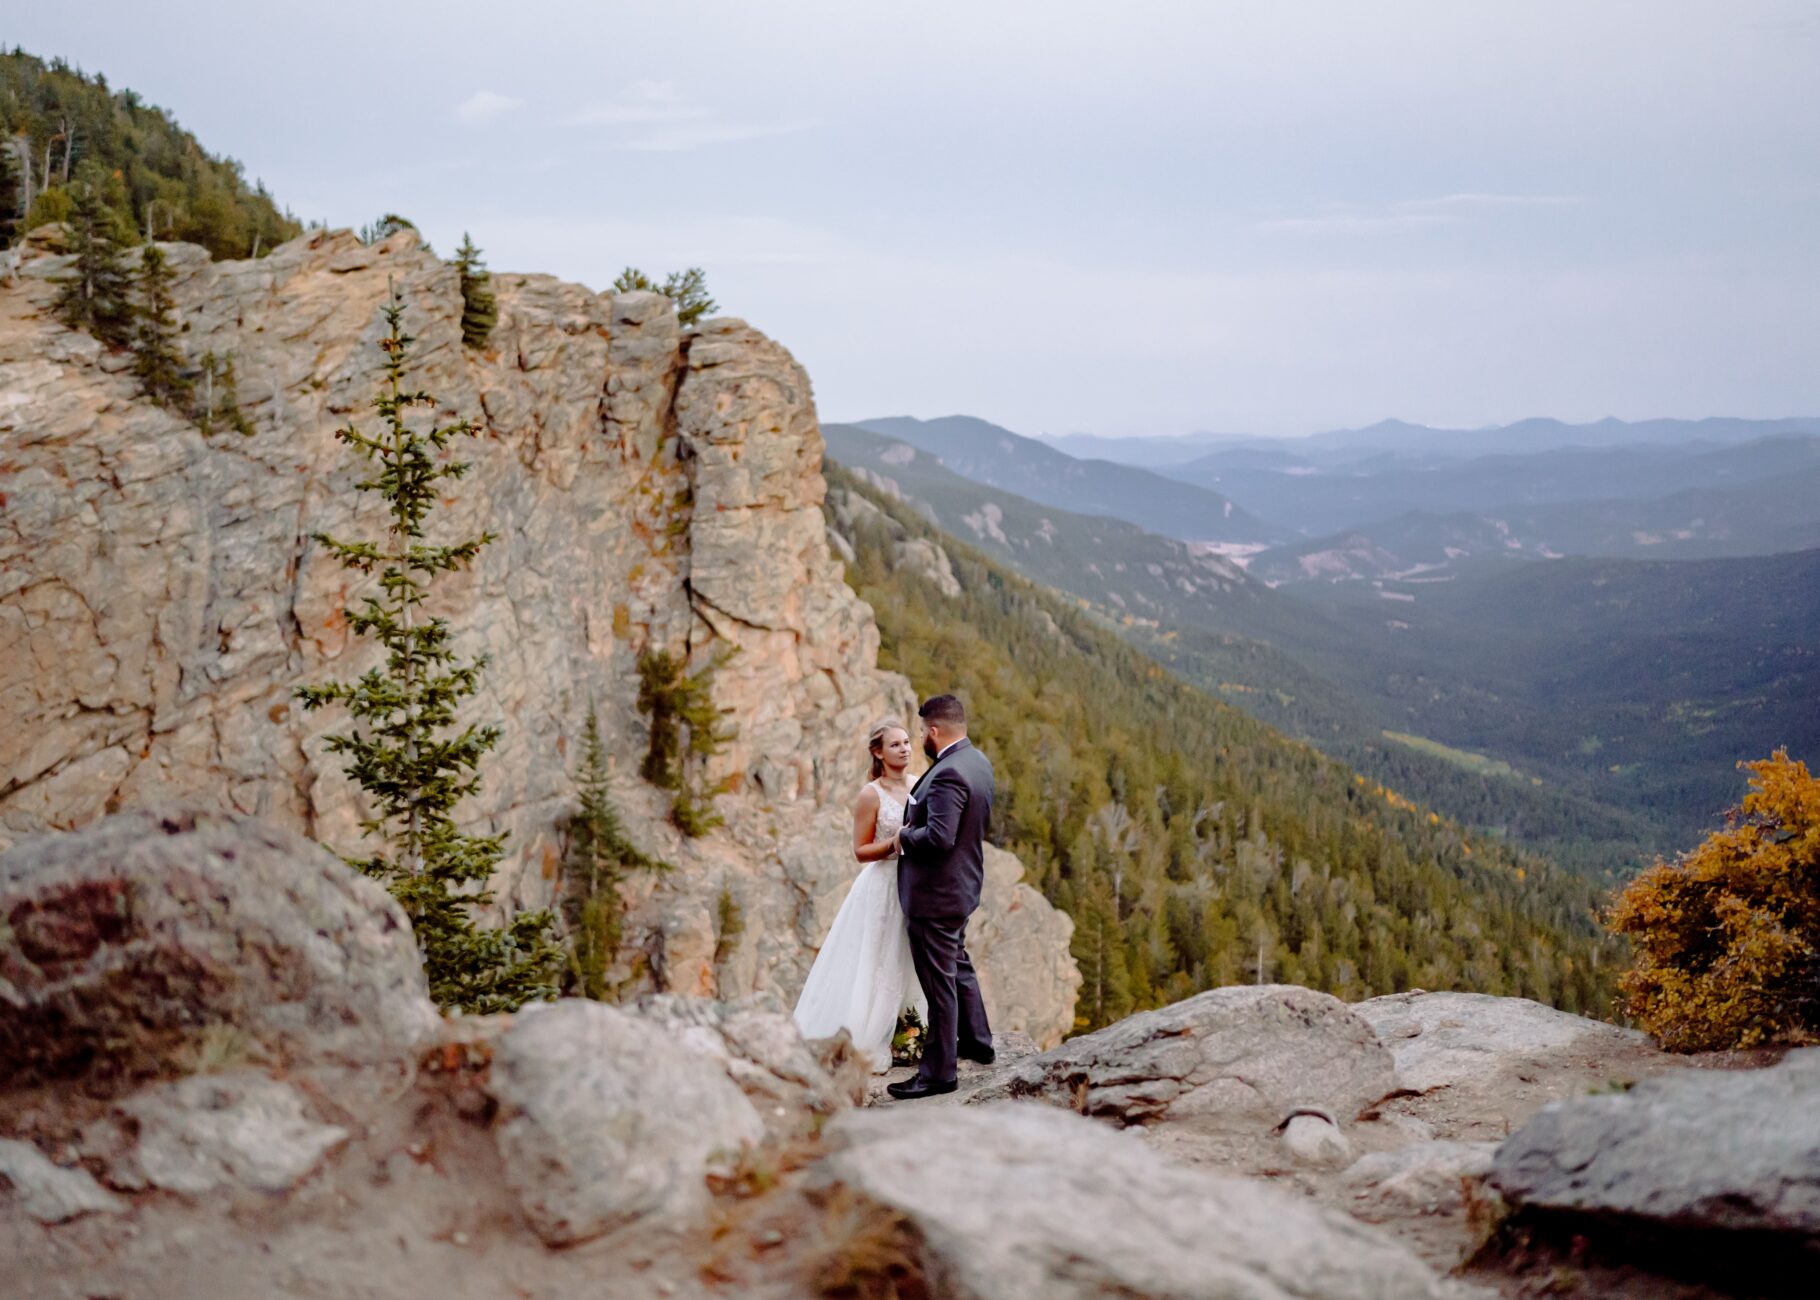 Felipe Callado Photography elopement photographer in Colorado